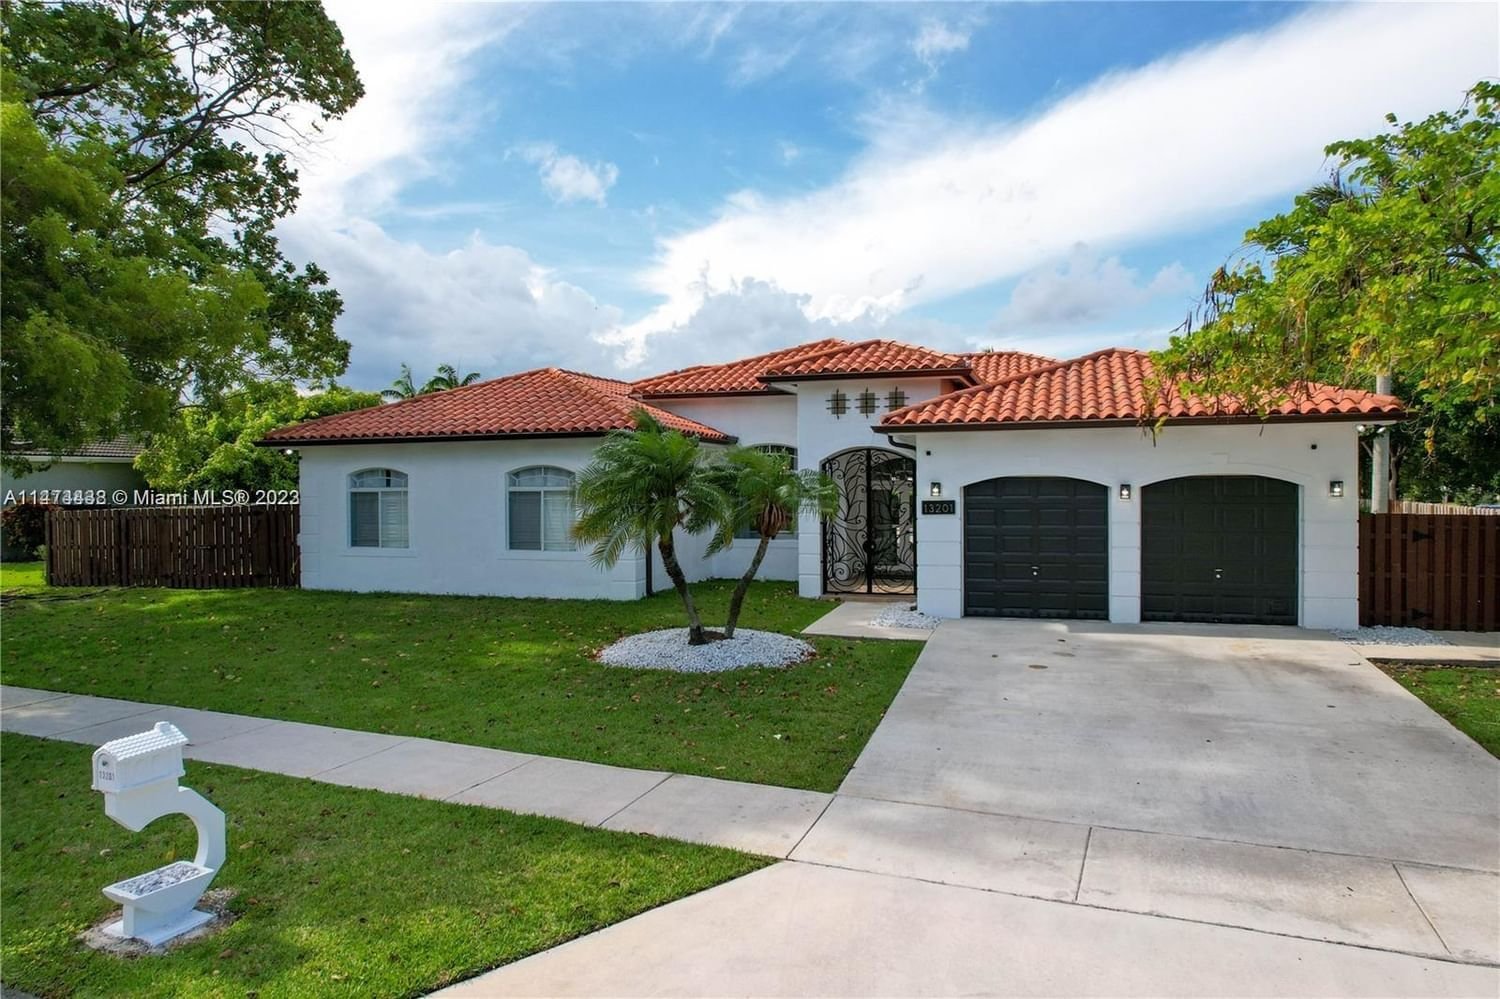 Real estate property located at 13201 204th St, Miami-Dade County, SEA PINES ESTATES, Miami, FL